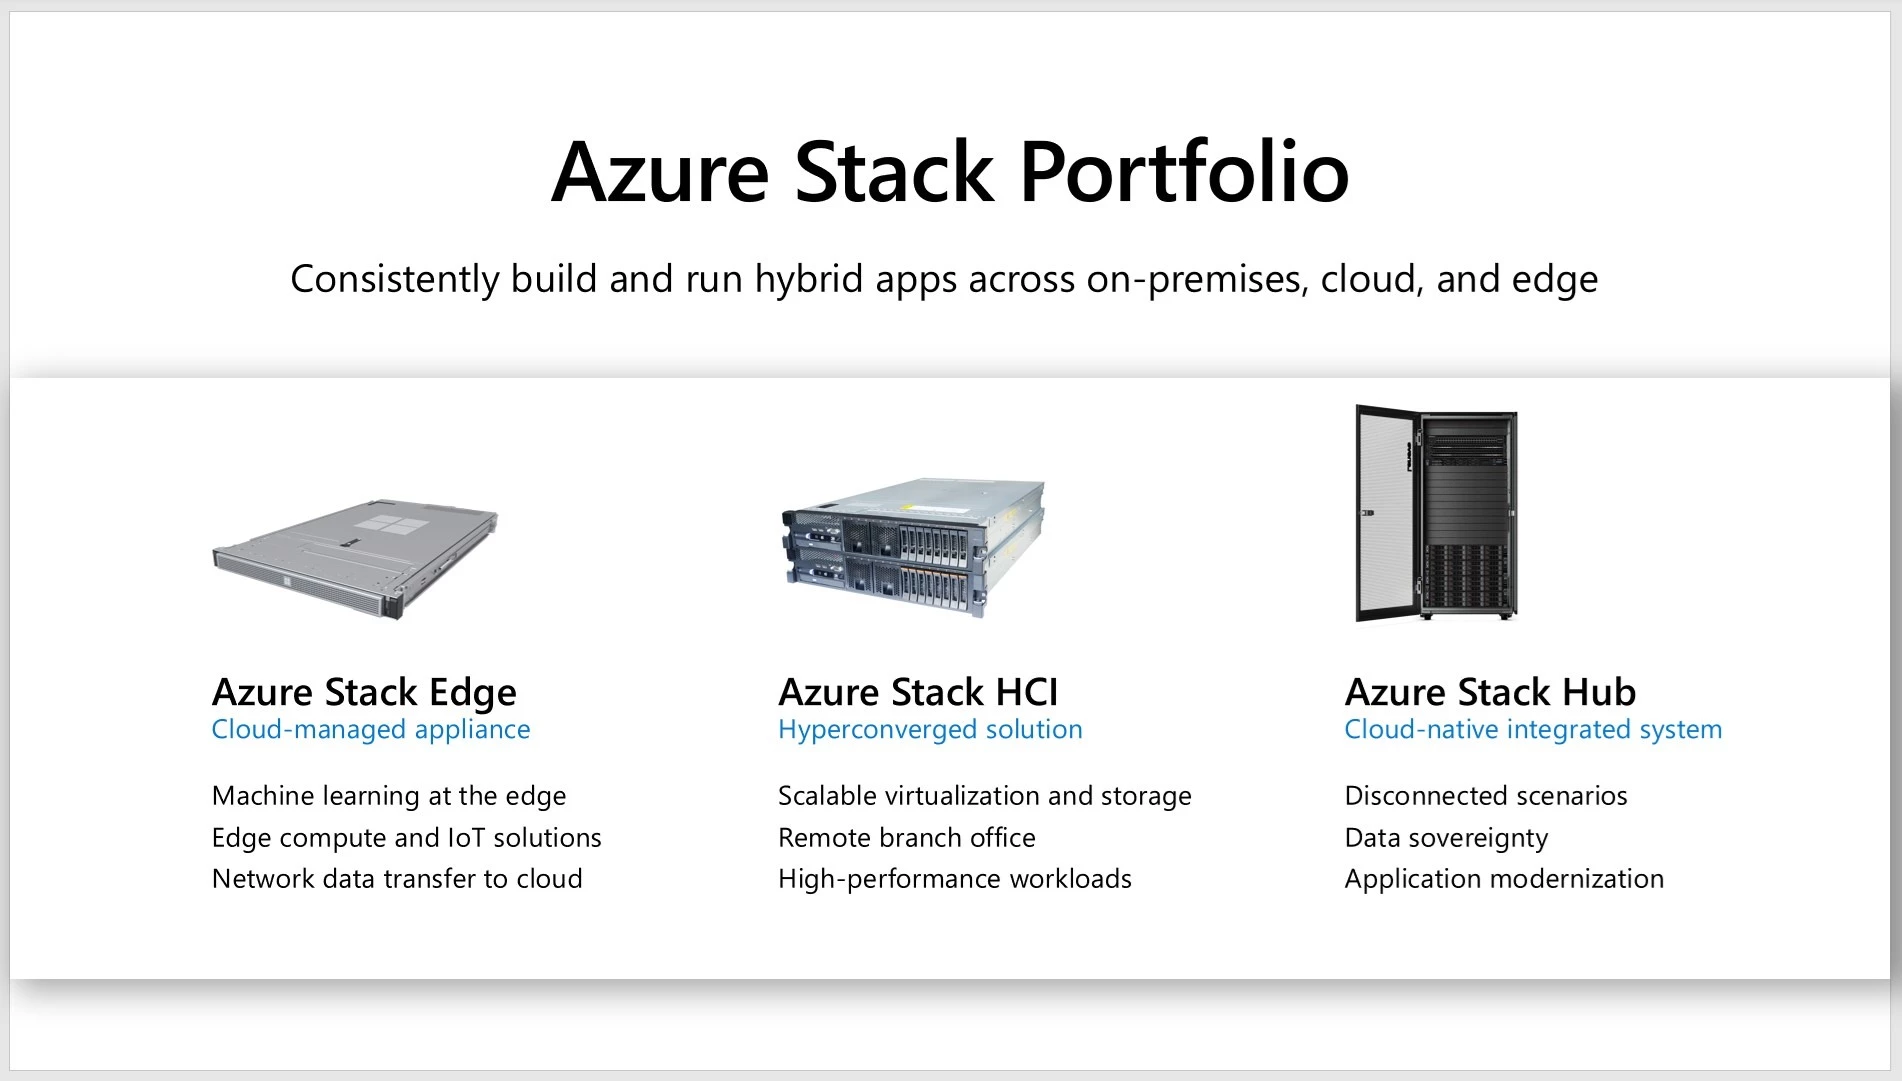 Azure Stack portfolio including of Azure Stack Edge, Azure Stack HCI, and Azure Stack Hub